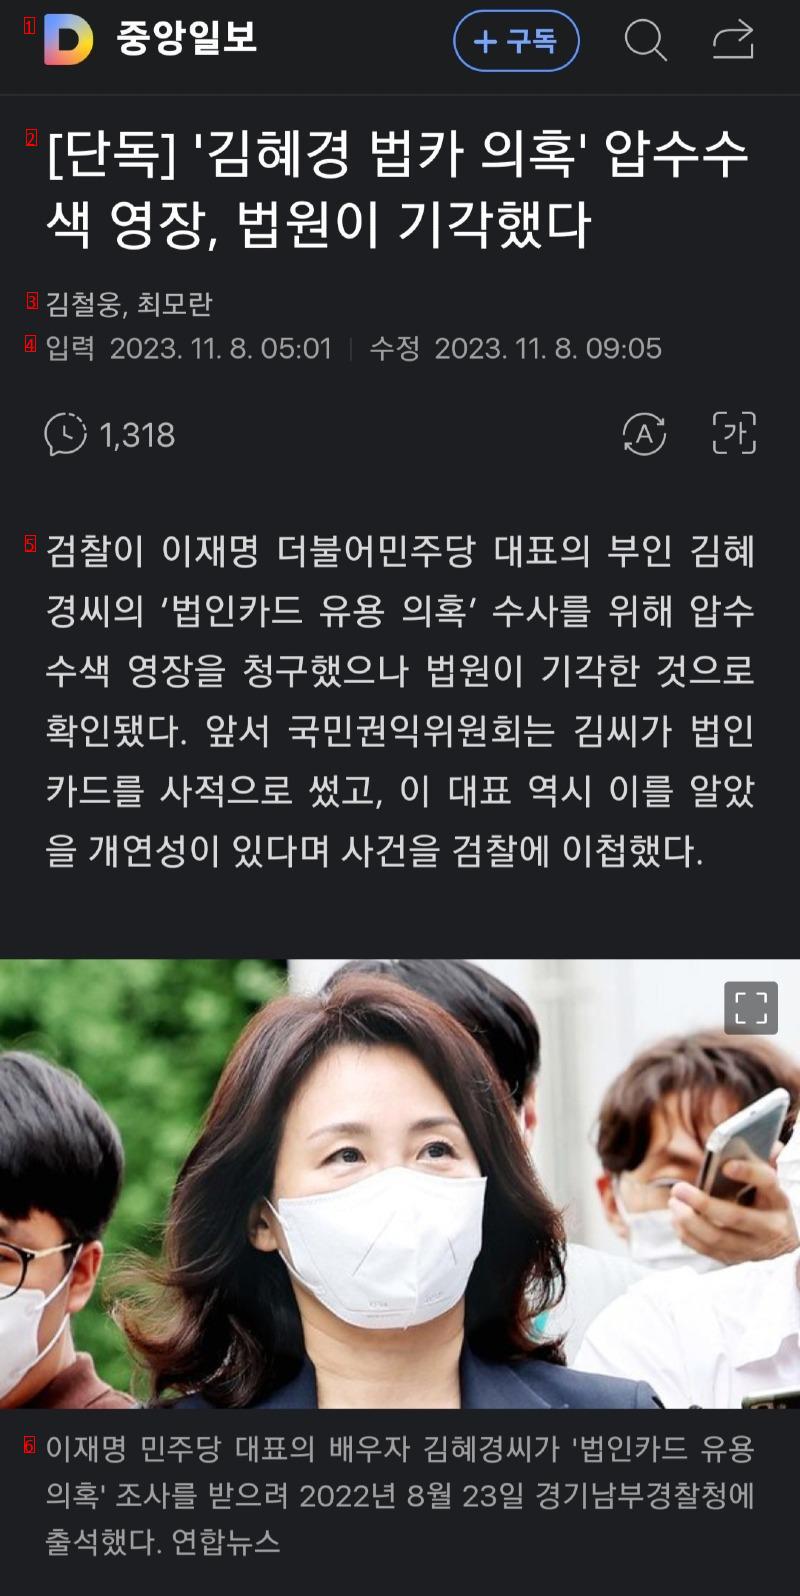 김혜경 법카 의혹 수색 영장, 법원이 기각